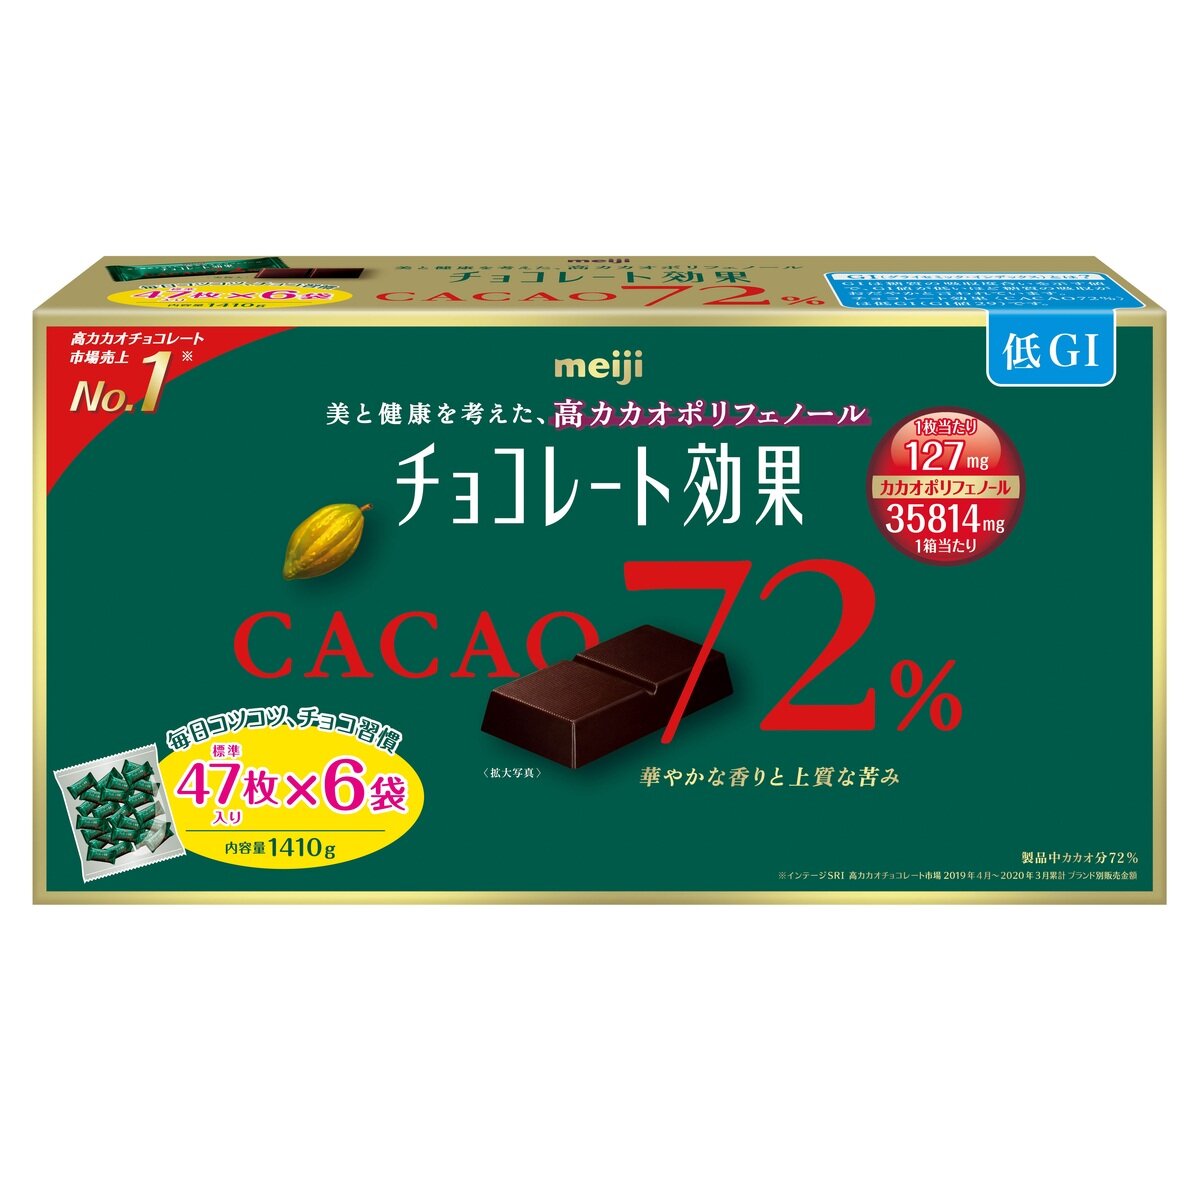 明治 チョコレート効果 カカオ 72% 47枚 X 6袋 1,410g | Costco Japan